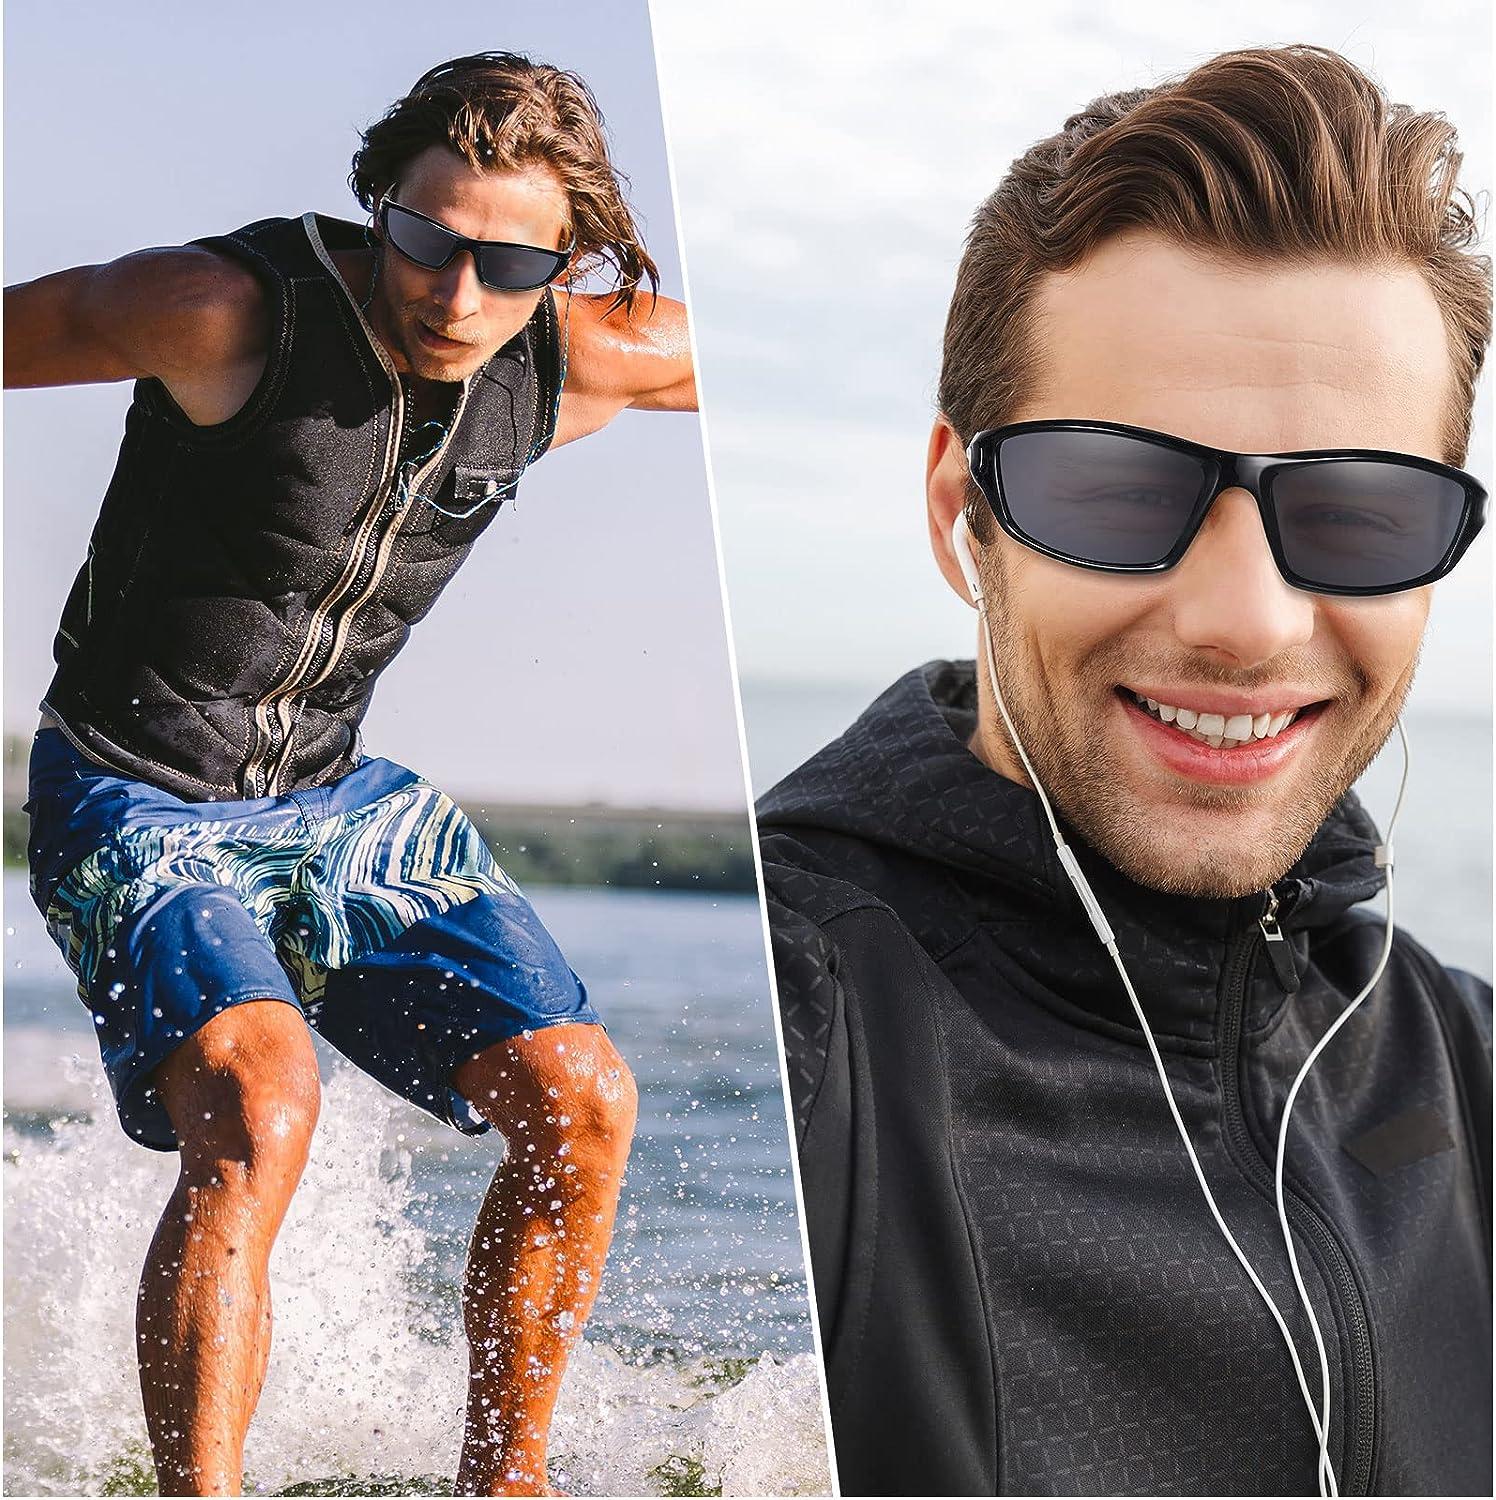 Prescription Singlasses for Men - Protection from UV Rays - Men Sunglasses